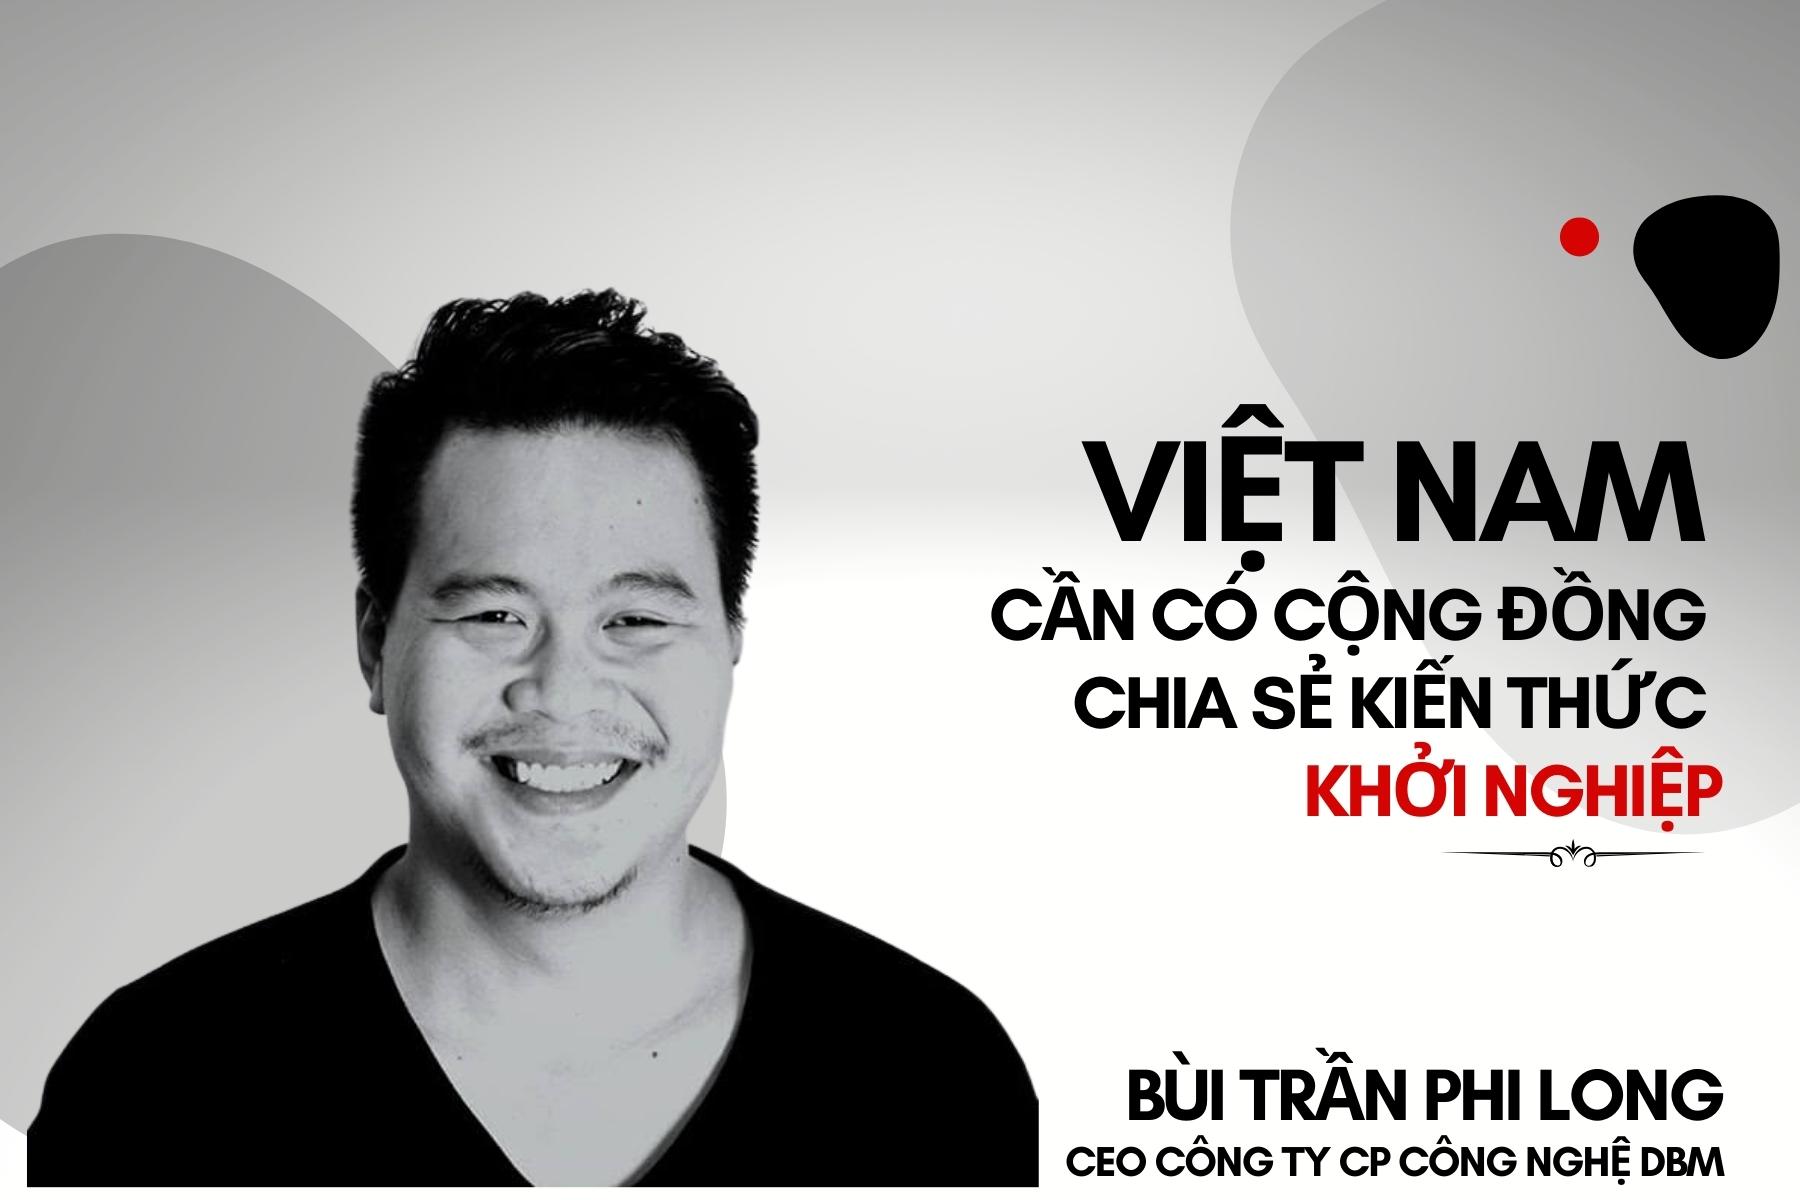 CEO Bùi Trần Phi Long: Việt Nam cần có cộng đồng chia sẻ kiến thức khởi nghiệp